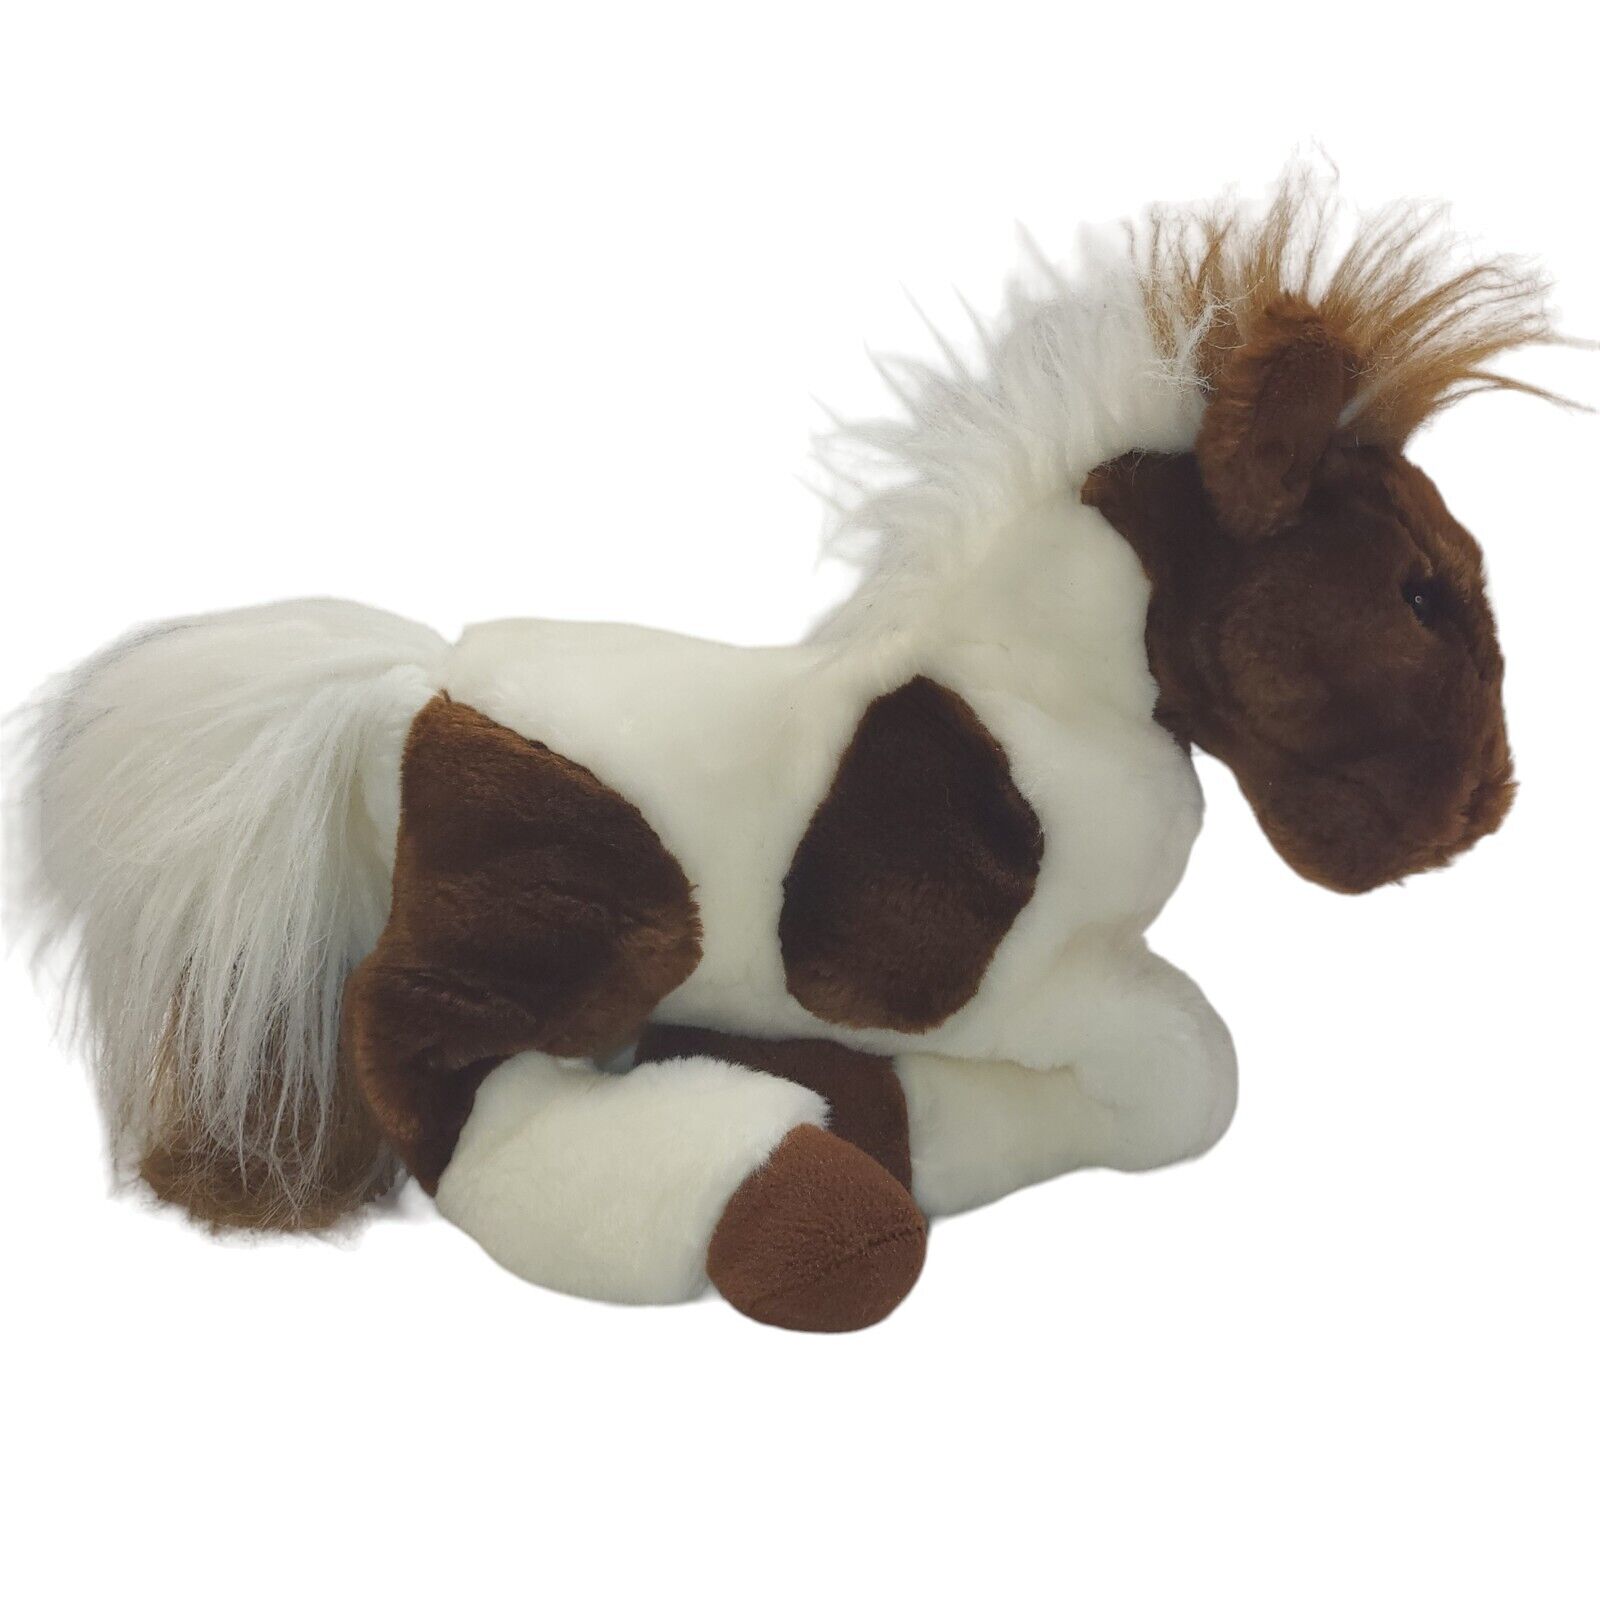 Toys R Us Plush Legendary Wells Fargo Horse Stuffed Animal Geoffrey 2005 11\